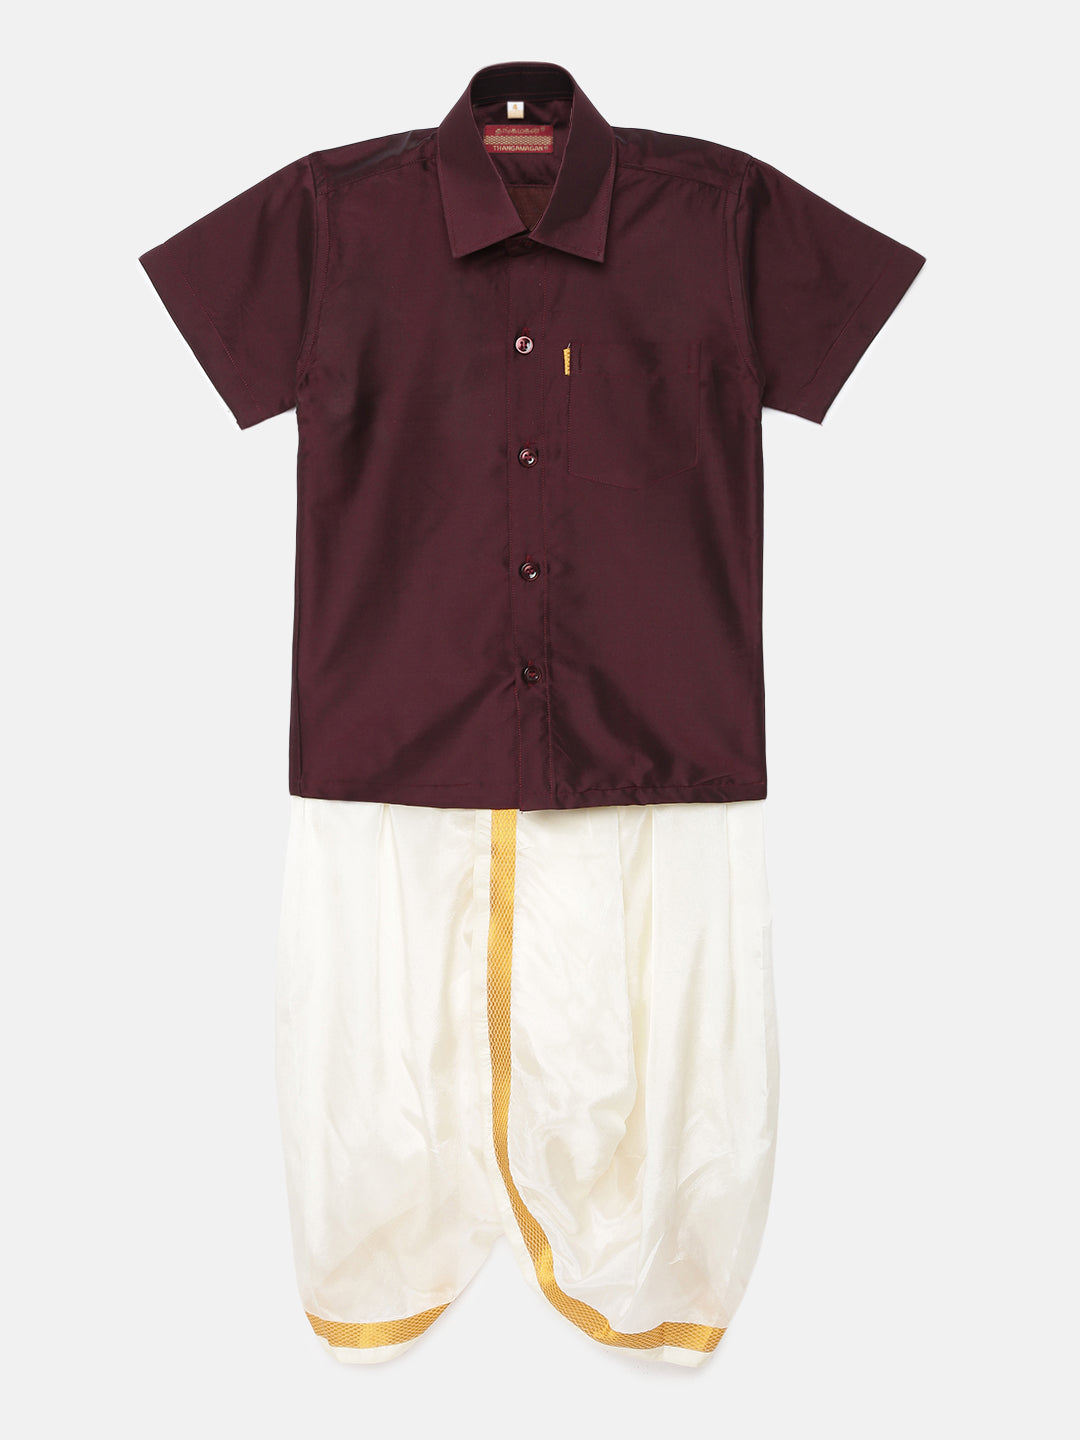 6. Boys Panjagajam & Shirt Set